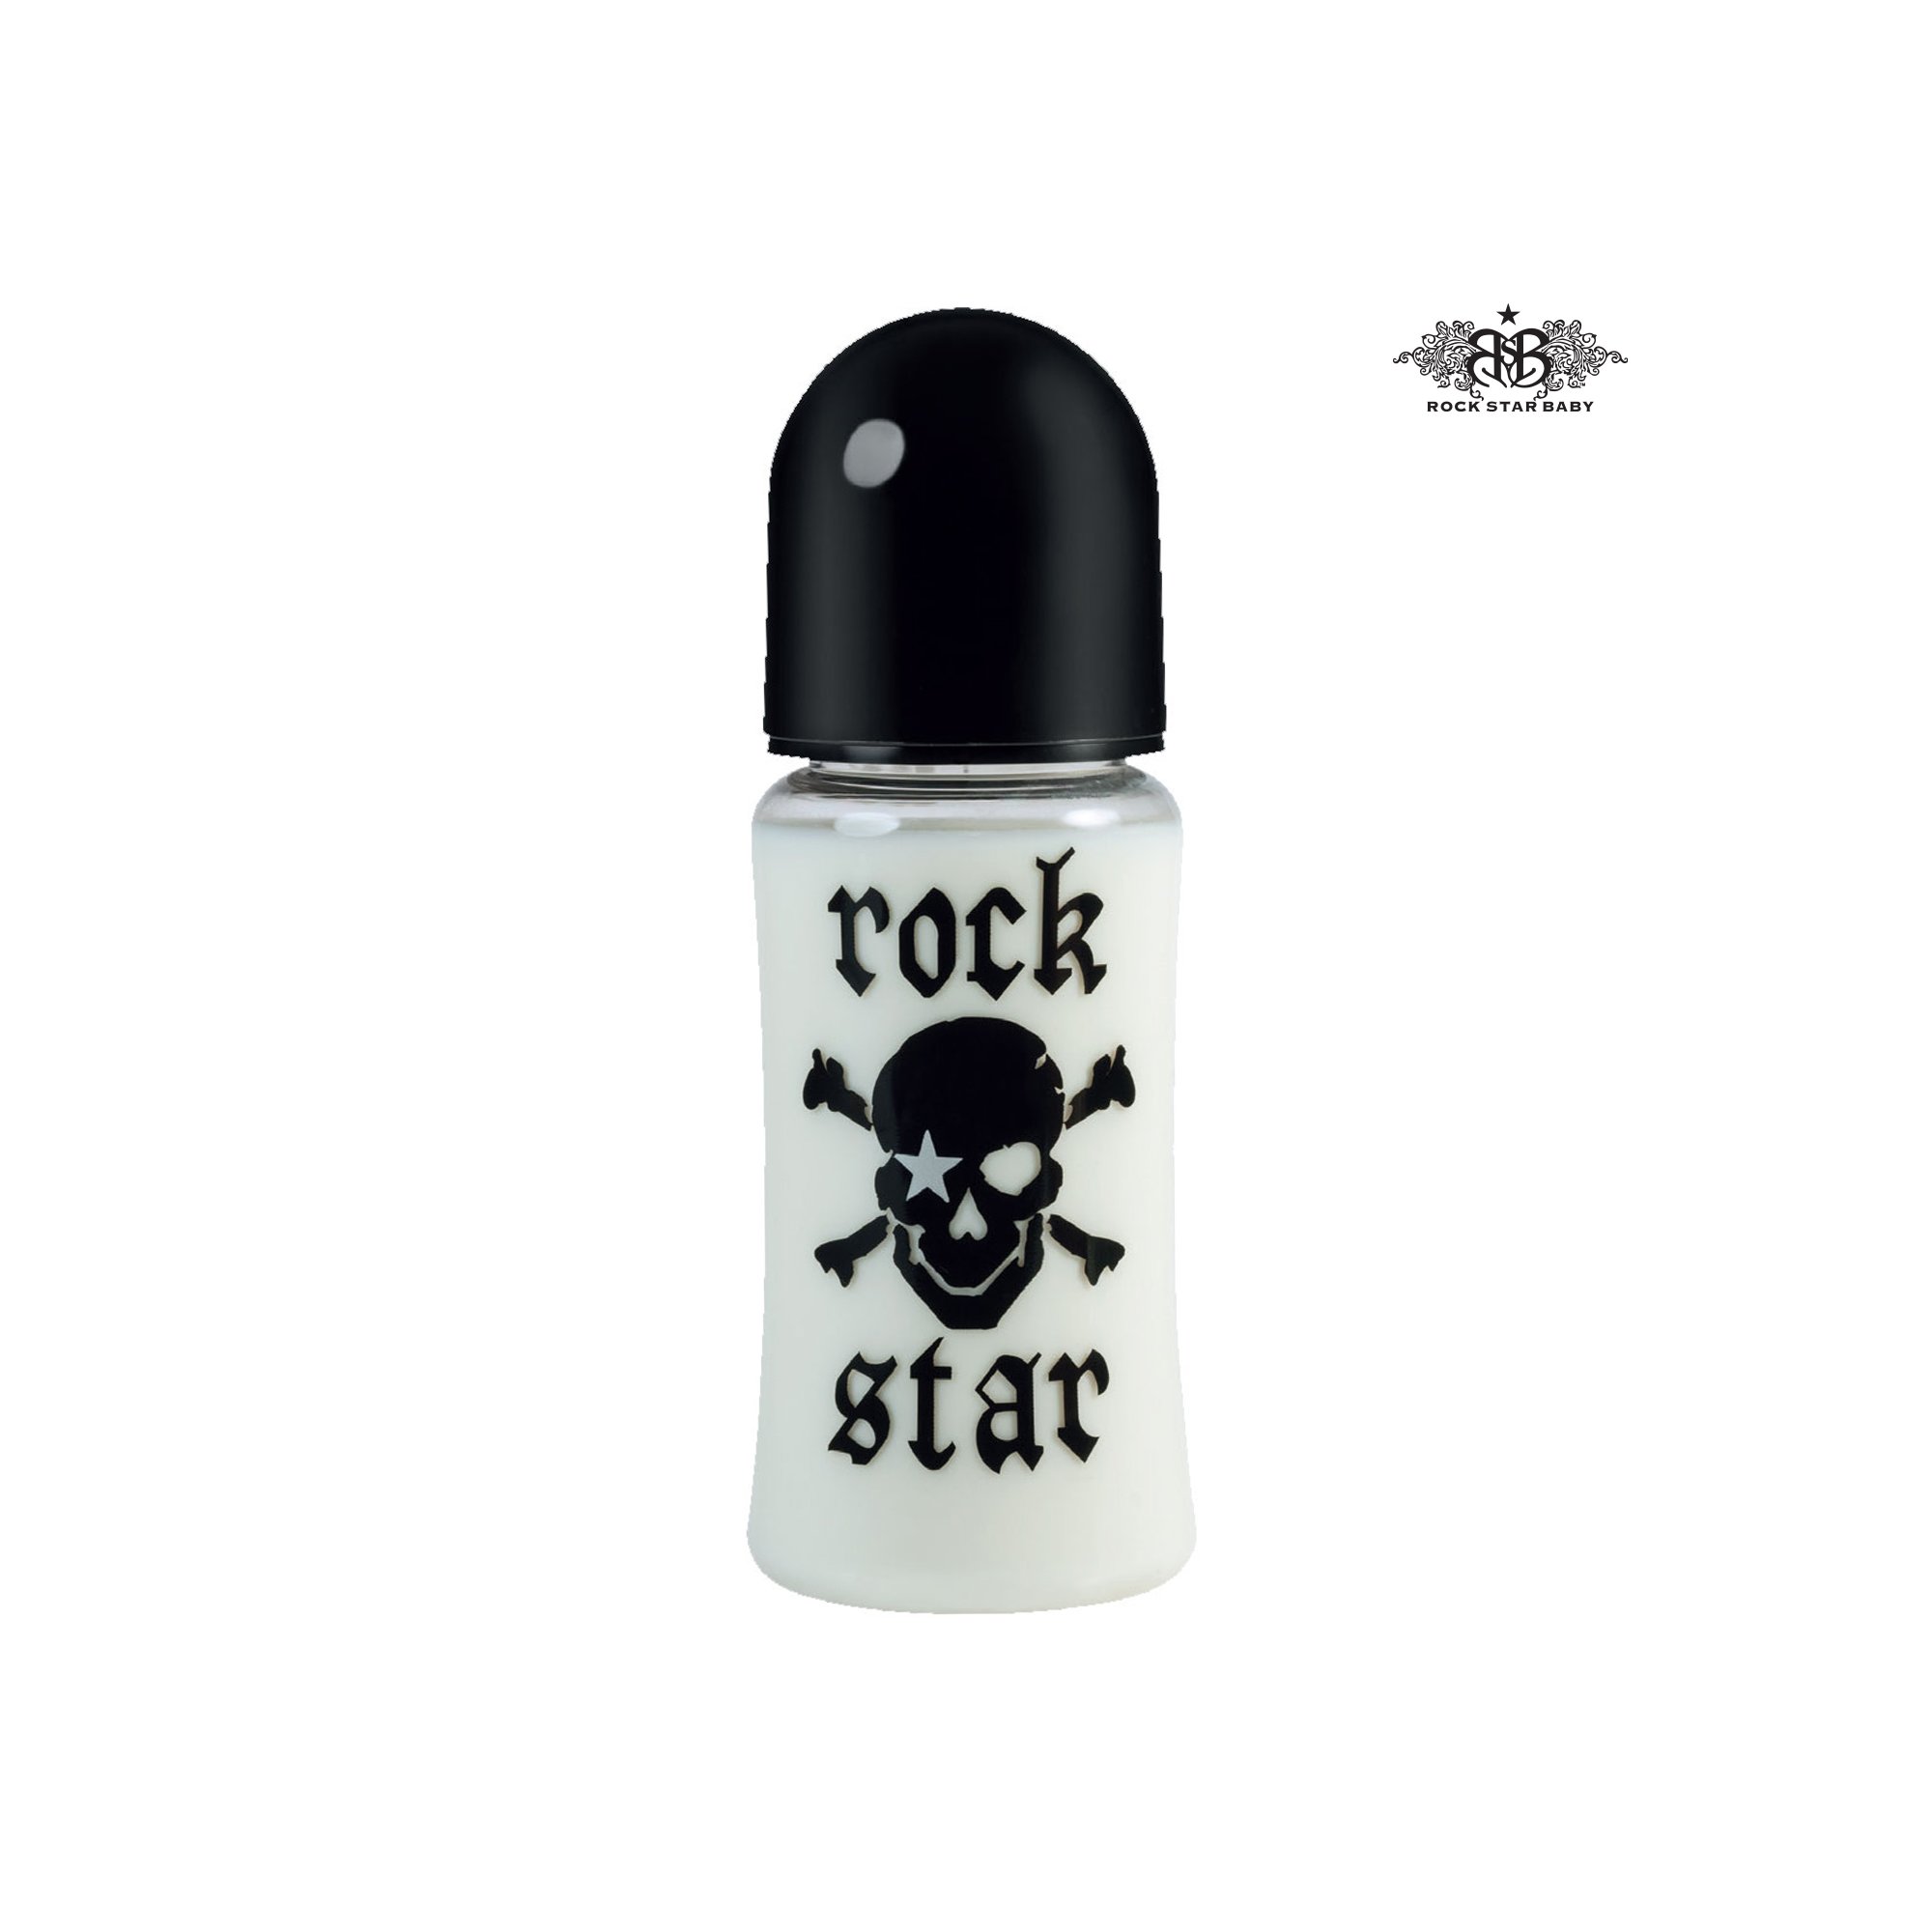 ROCK STAR BABY Pirat Weithals Trinkflasche 300 ml 